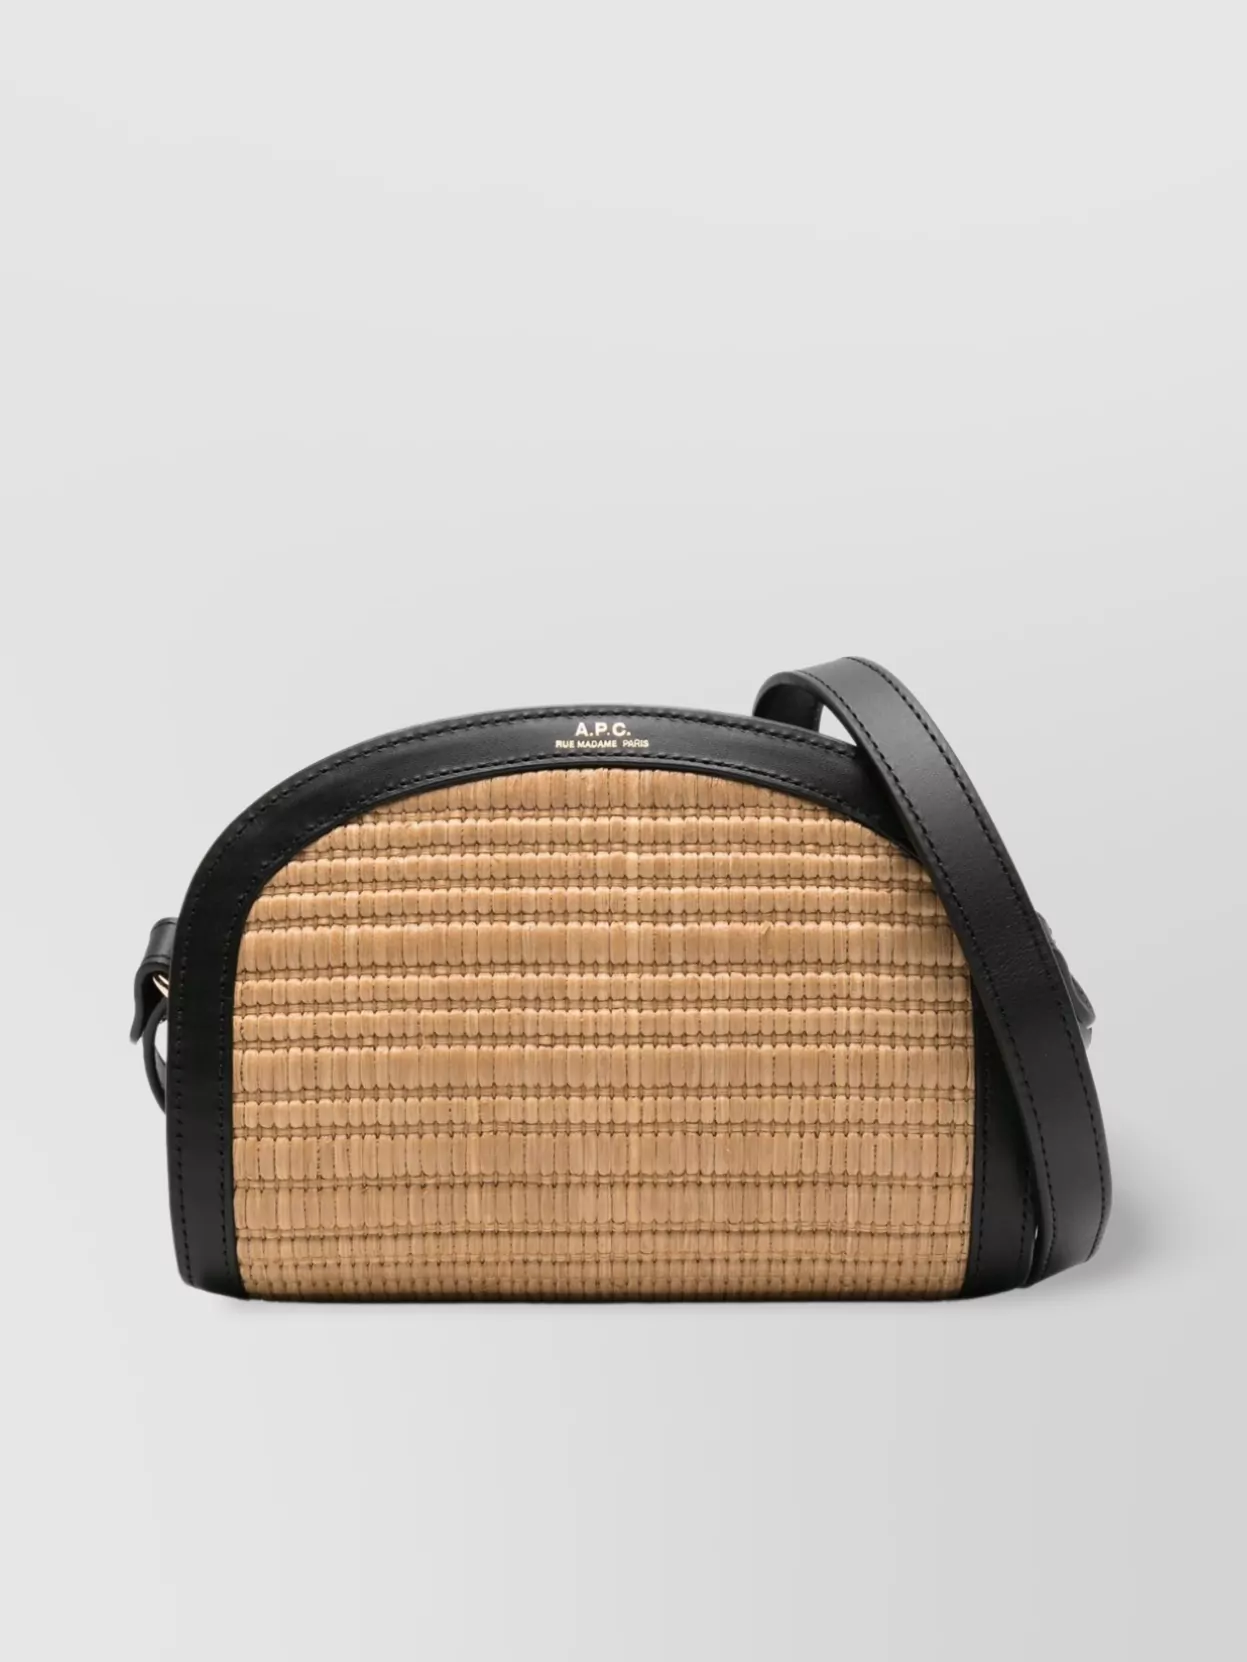 Shop Apc Mini Crescent Shoulder Bag With Adjustable Strap